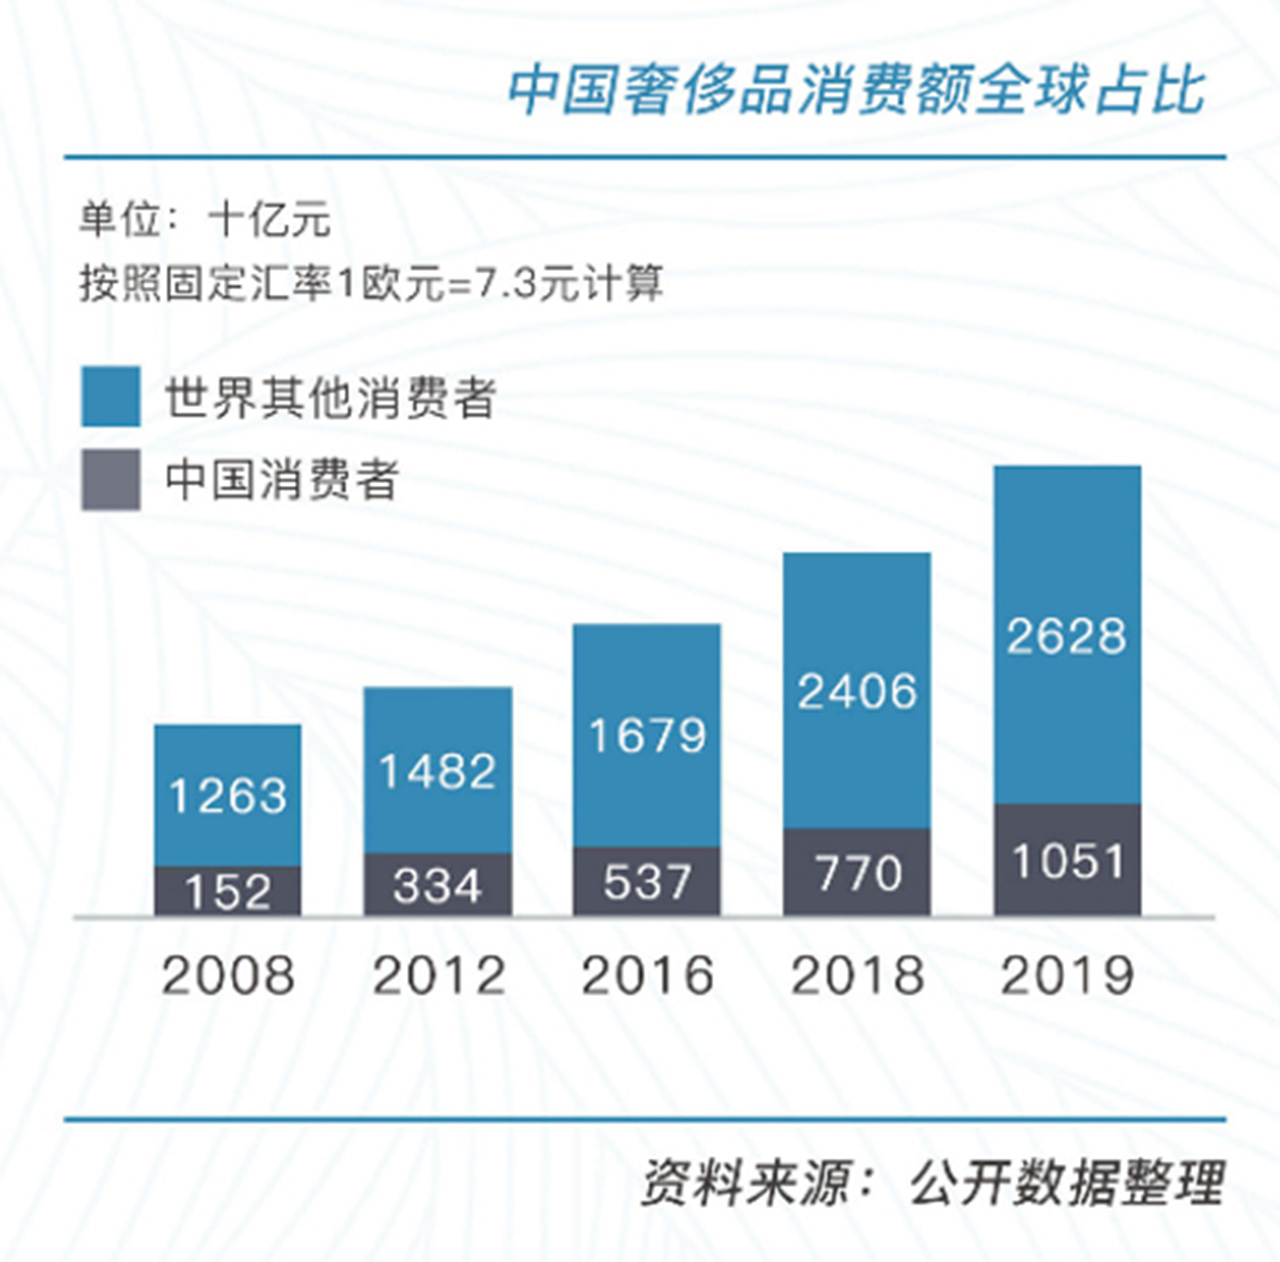 019年には世界の約1/3の消費を誇る中国。中国二手奢侈品市场发展研究报告2020より。